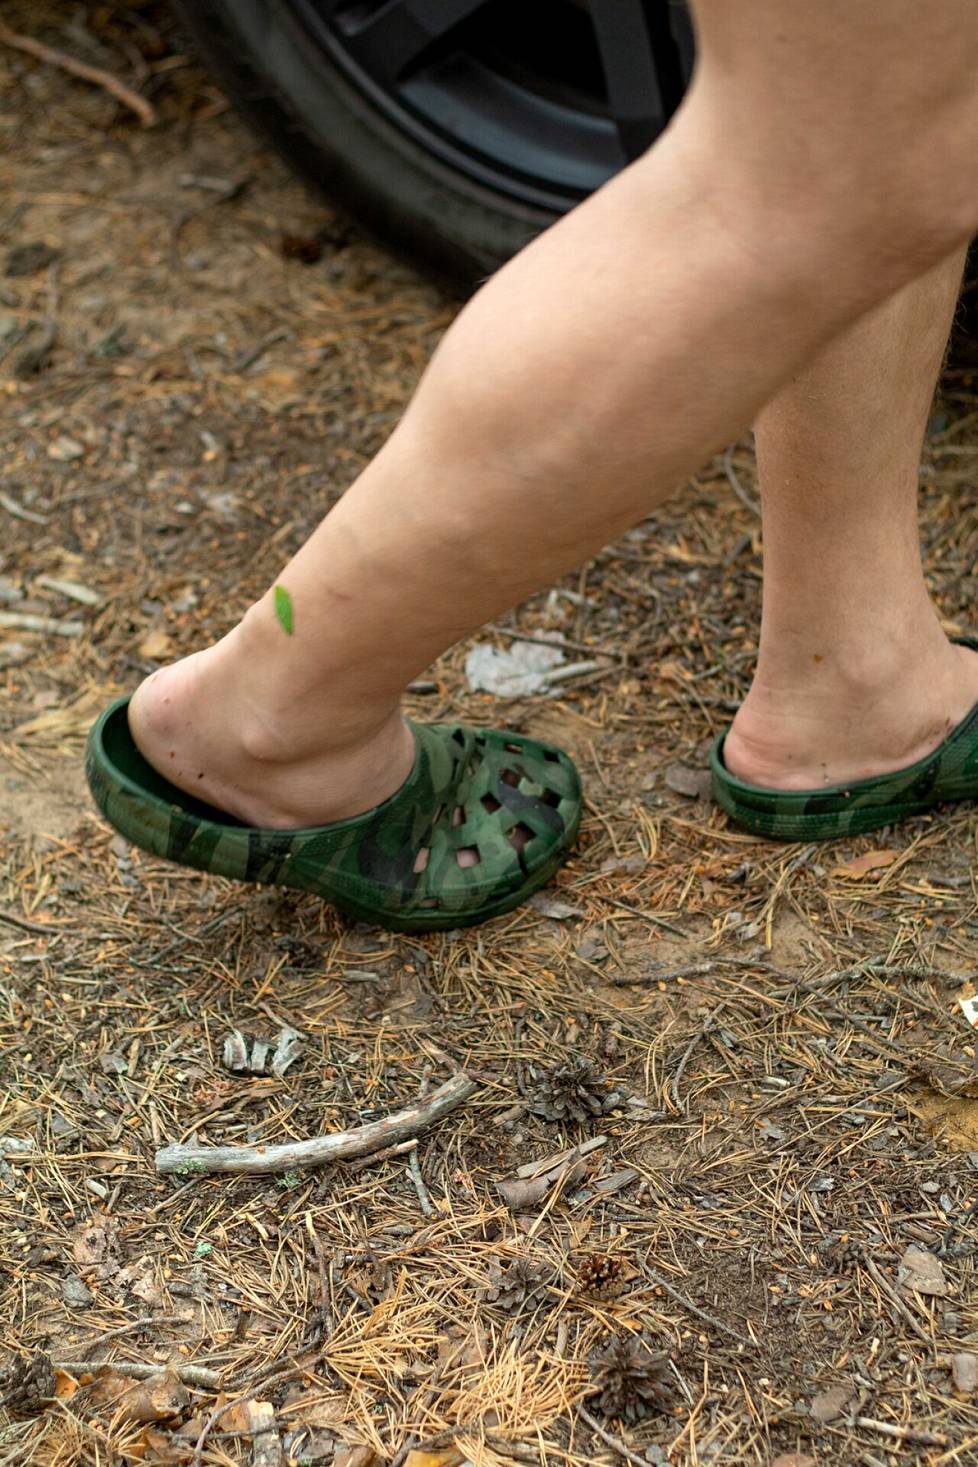 Metsässä liikkuessa kenkien on hyvä olla käytännölliset ja olosuhteisiin sopivat. 